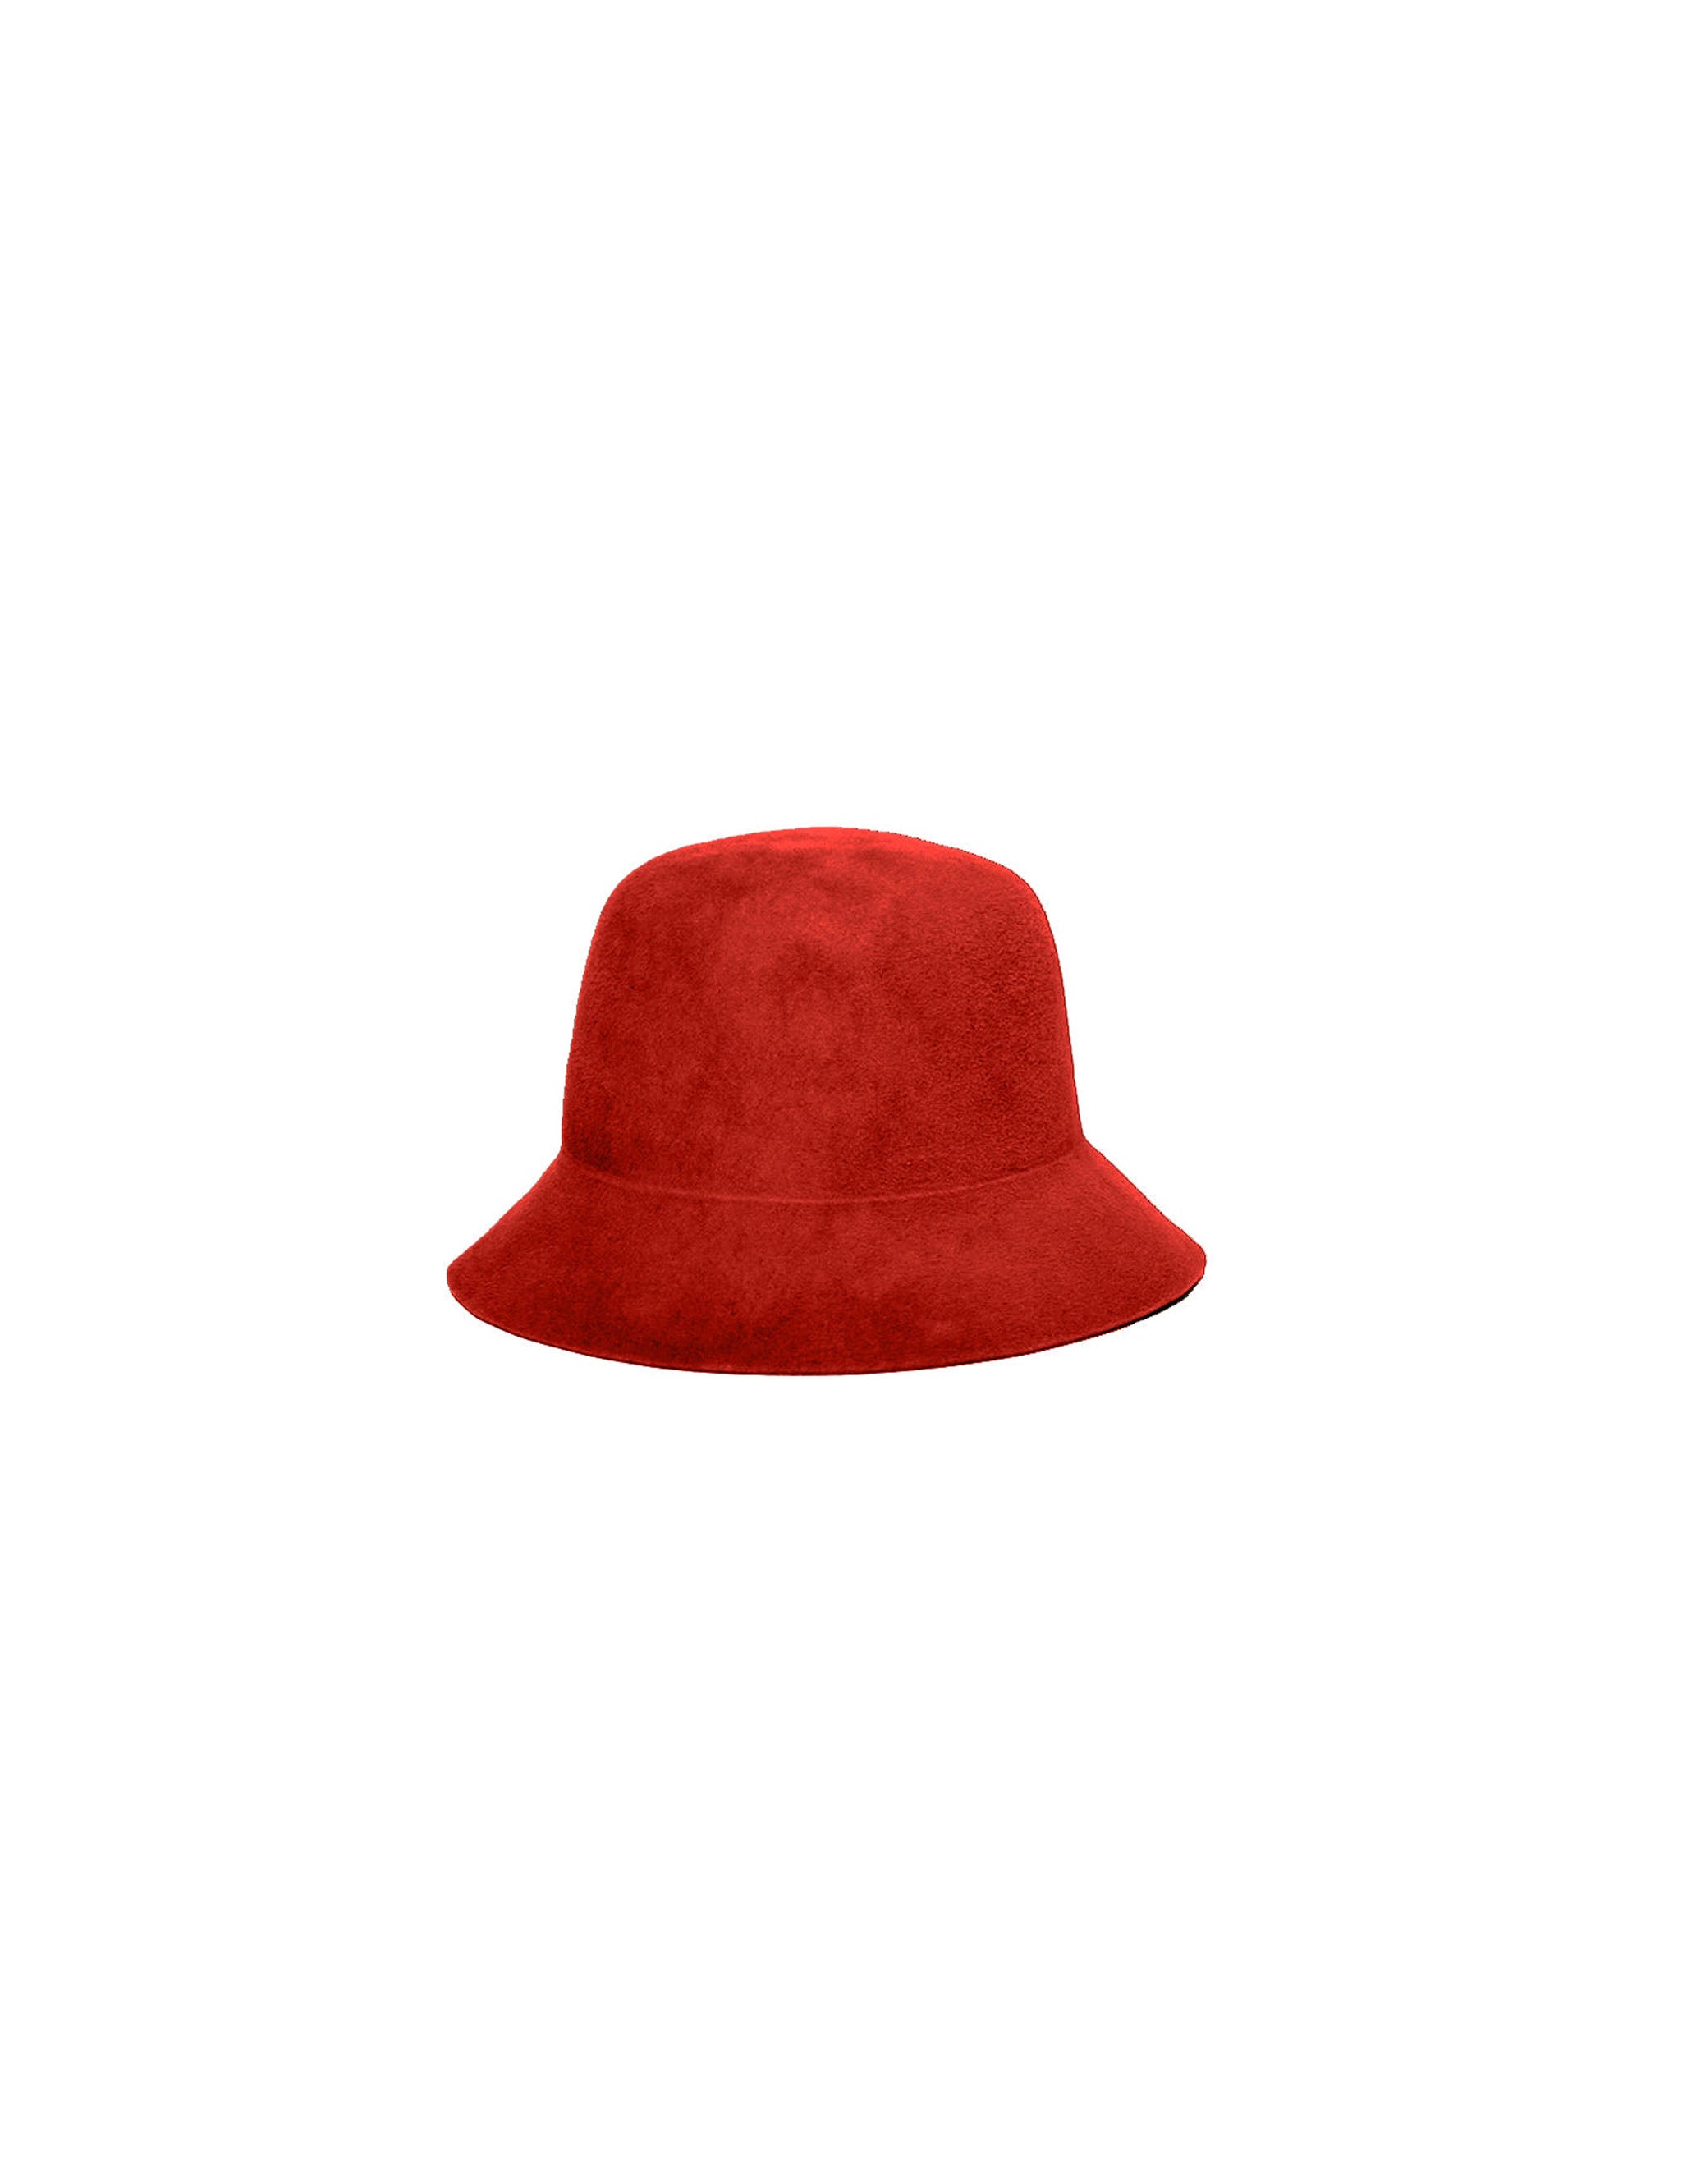 Bucket Hat | Handmade Felt Hats | éN Hats – enhats.com